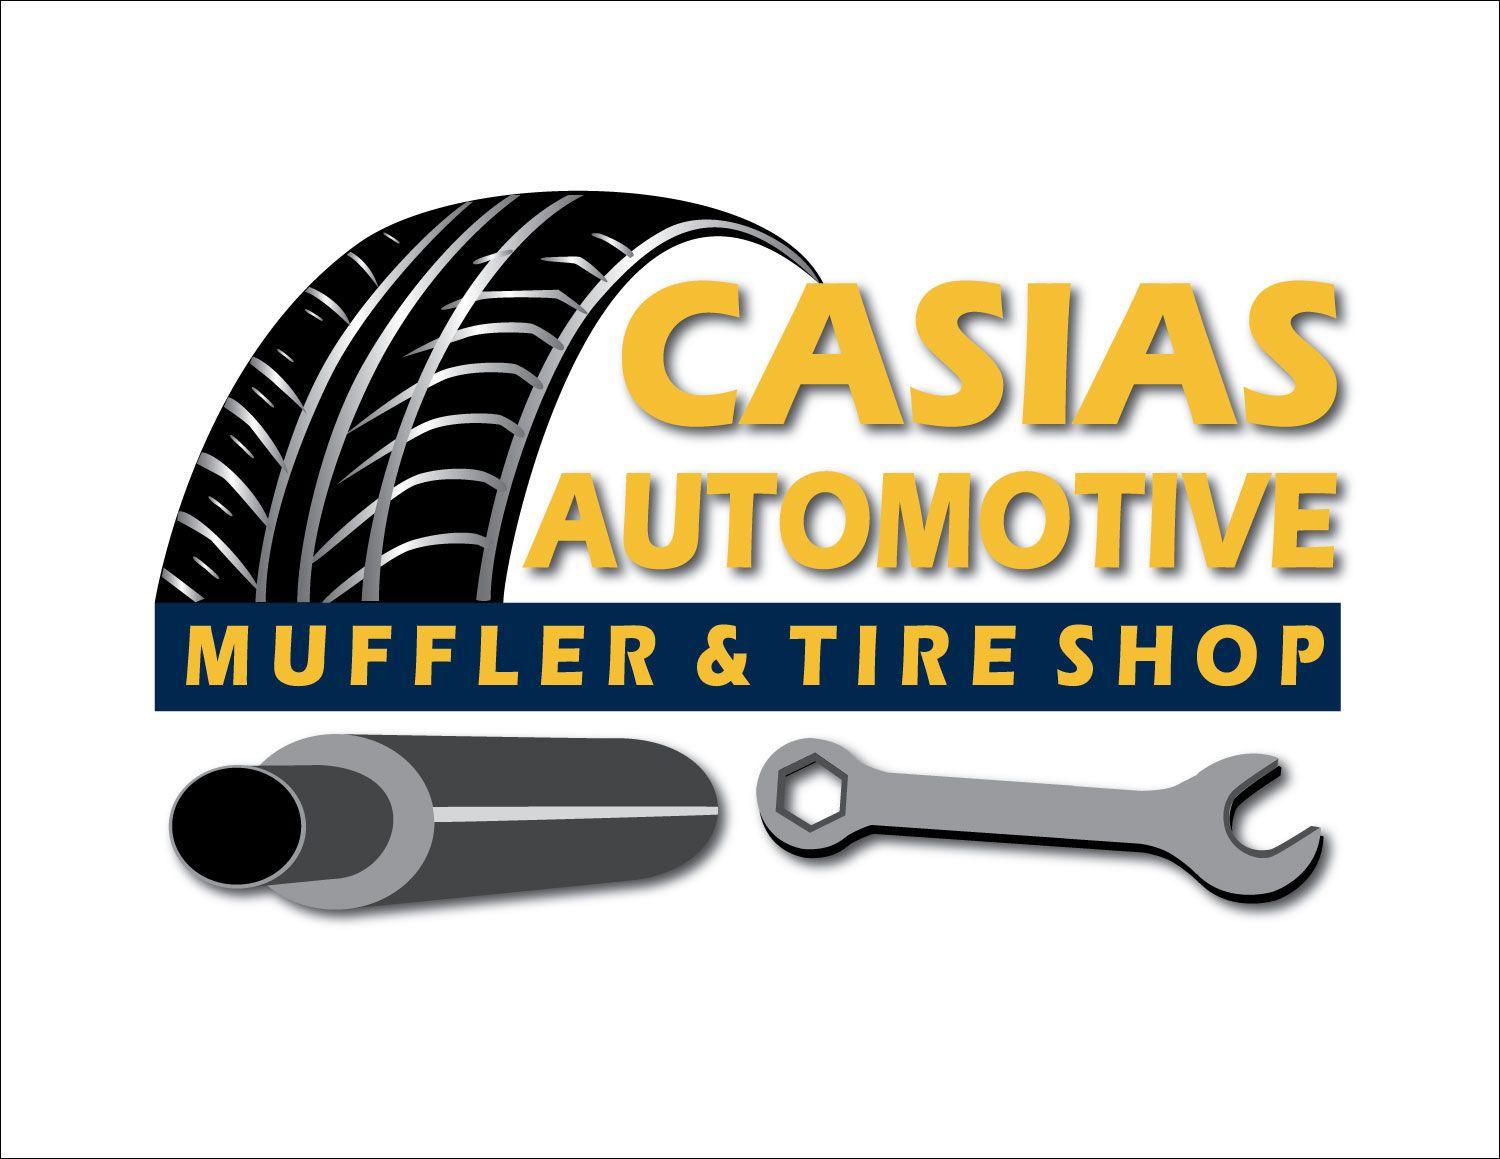 Automotive Tire Shop Logo - Casias Tire Shop. Better Business Bureau® Profile